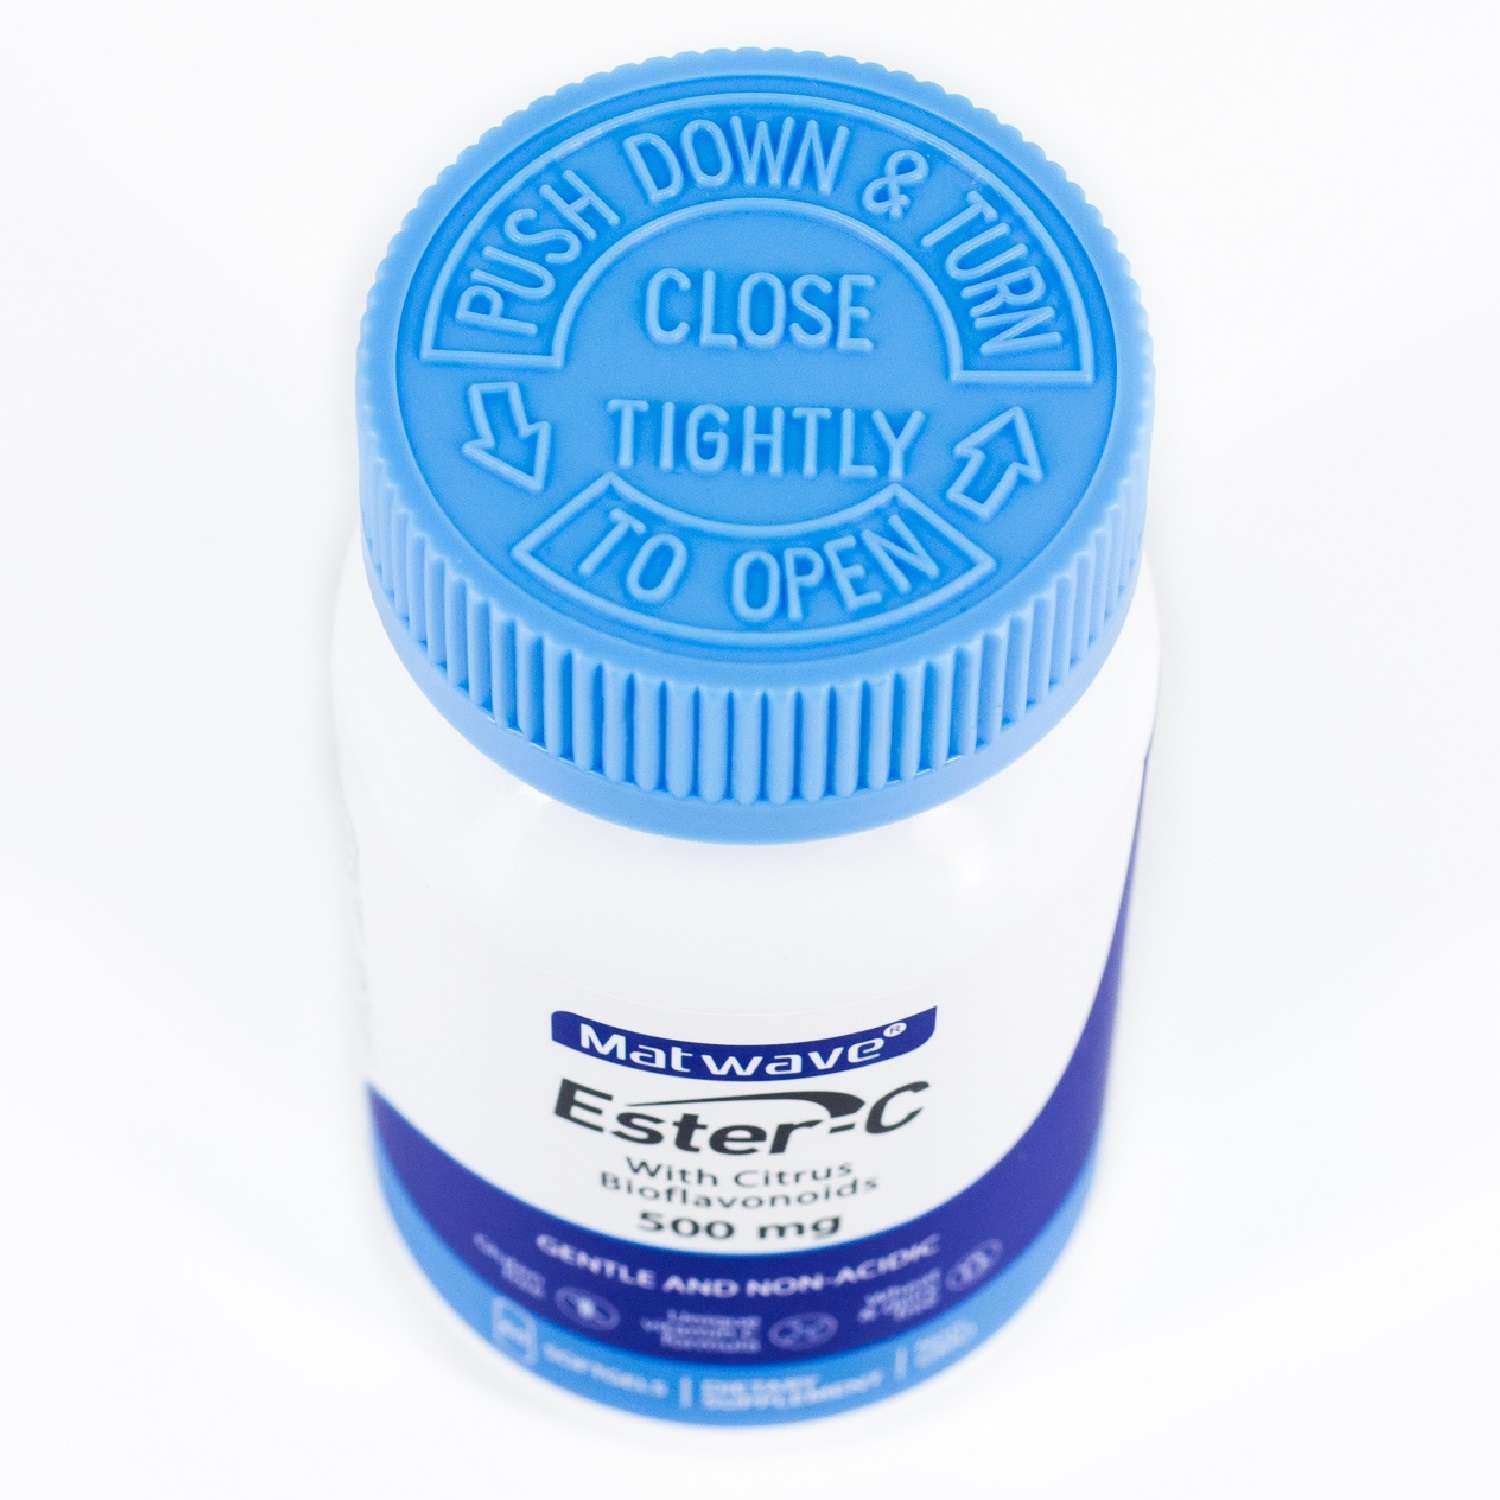 Витамин С Matwave Ester-C Эстер С 500 mg 60 капсул комплект 2 упаковки - фото 8